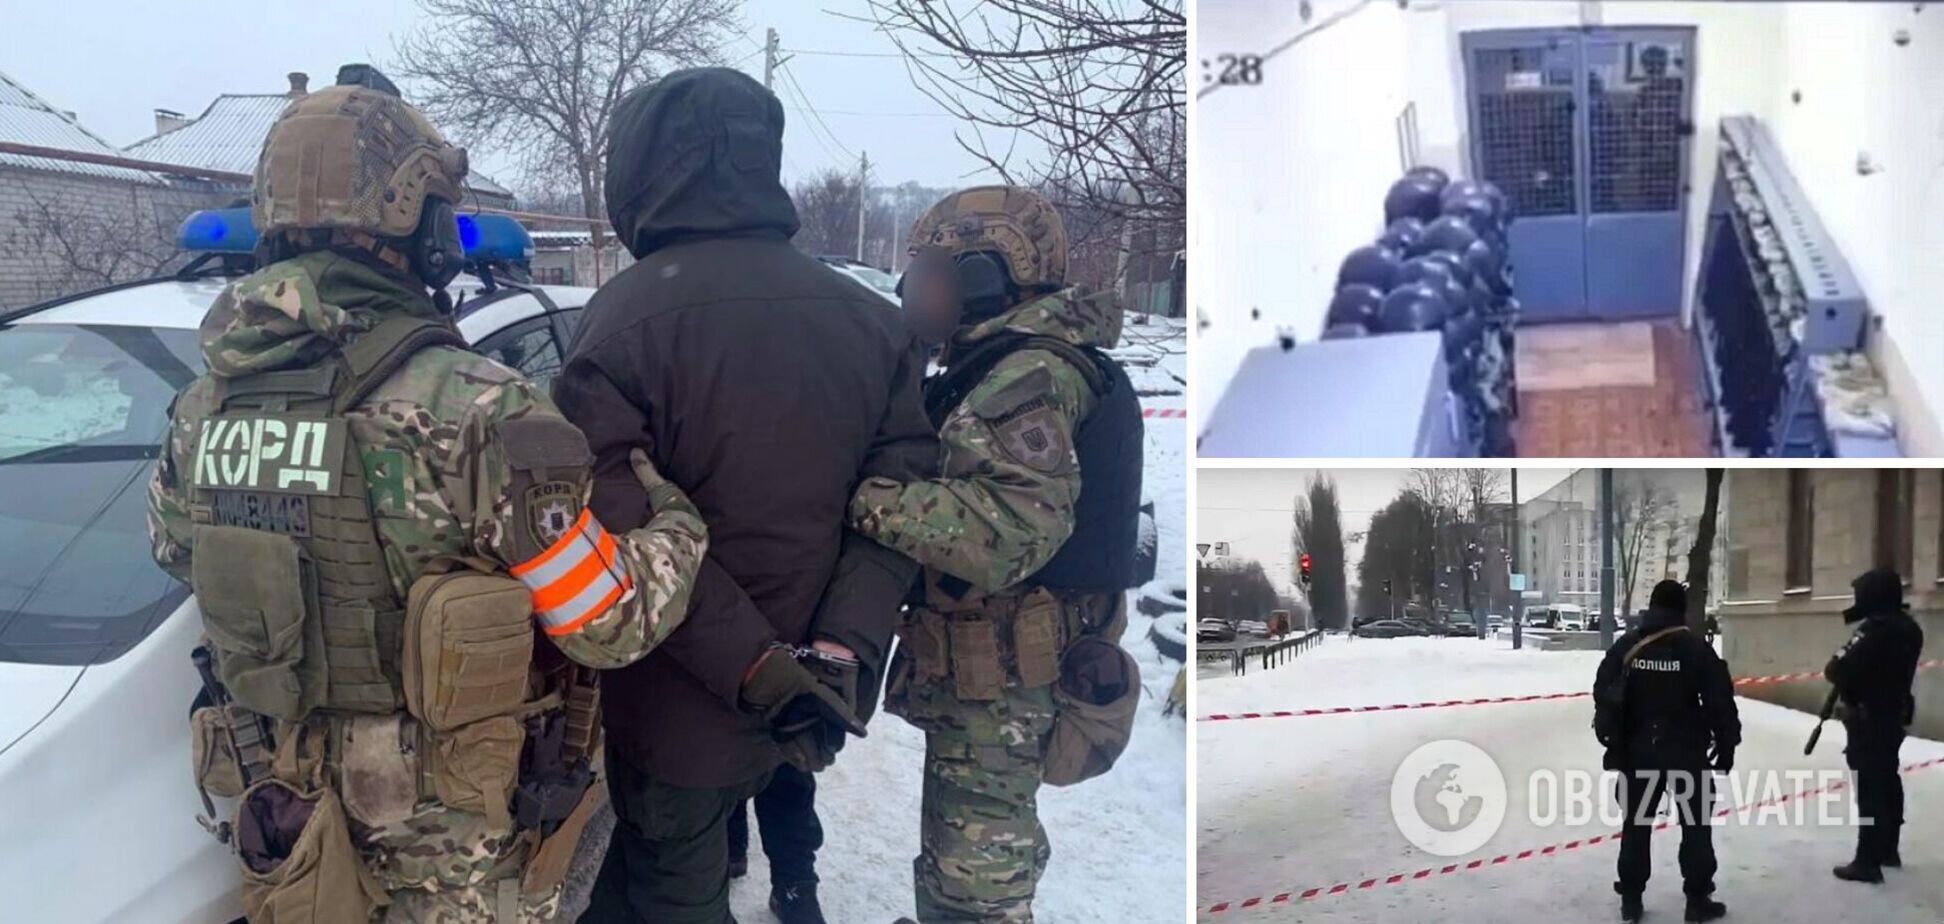 Відео стрілянини Рябчука виклали у мережу поліцейські: що відомо